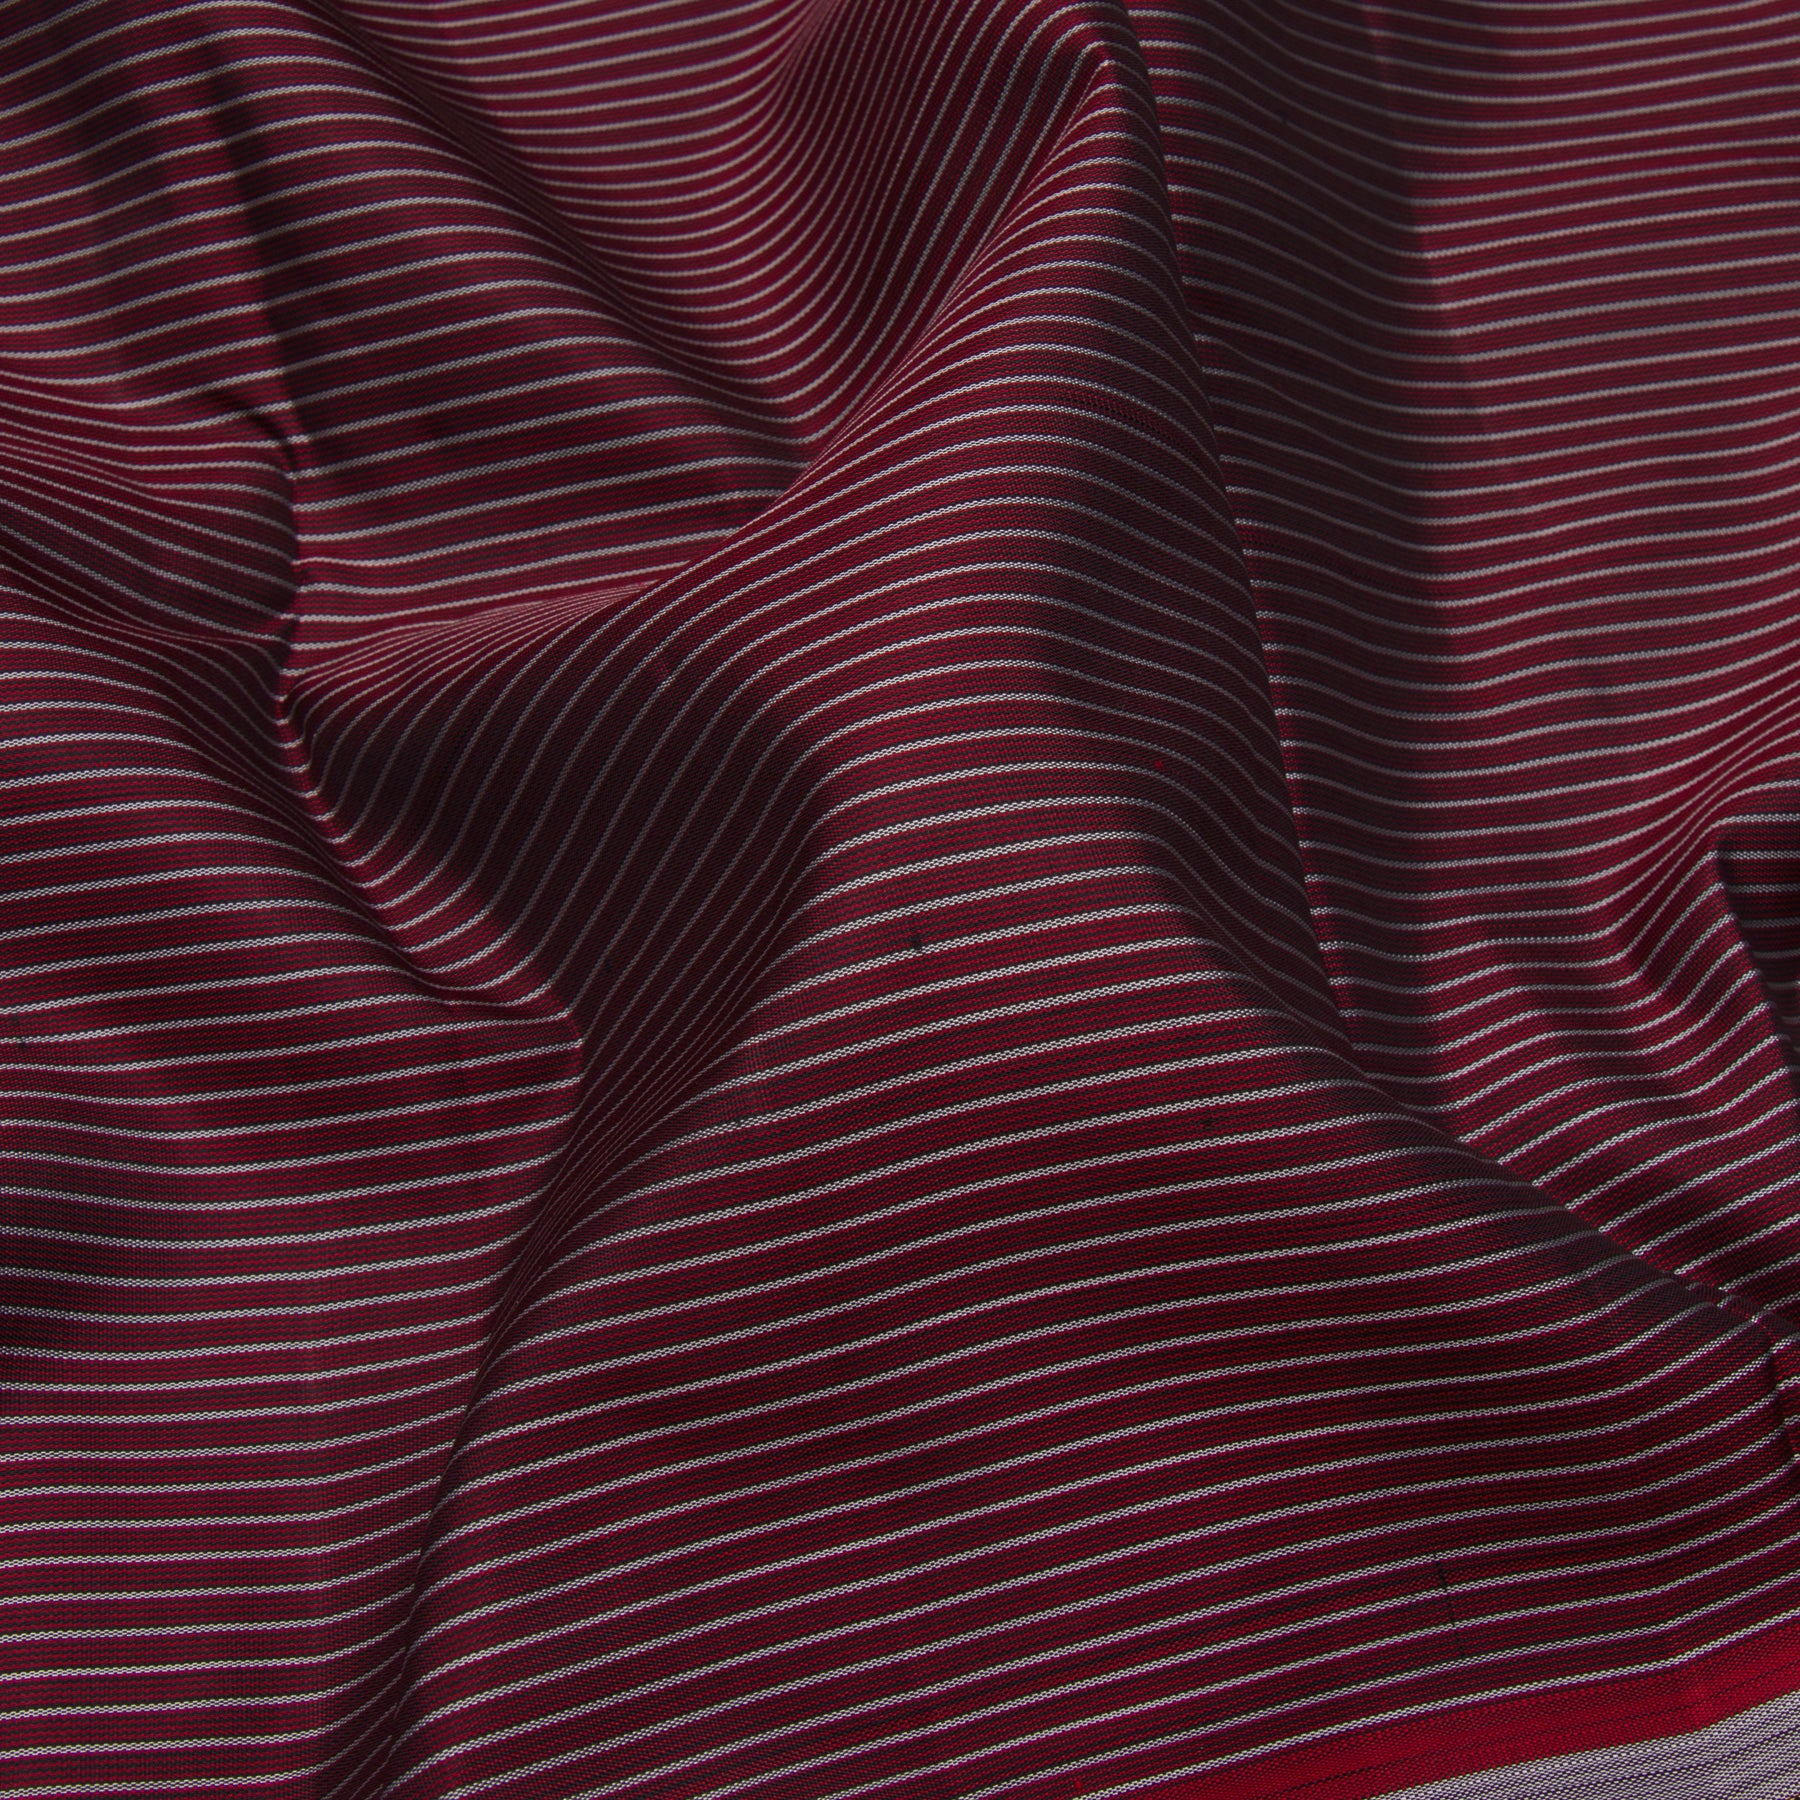 Kanakavalli Kanjivaram Silk Sari 23-611-HS001-06187 - Fabric View